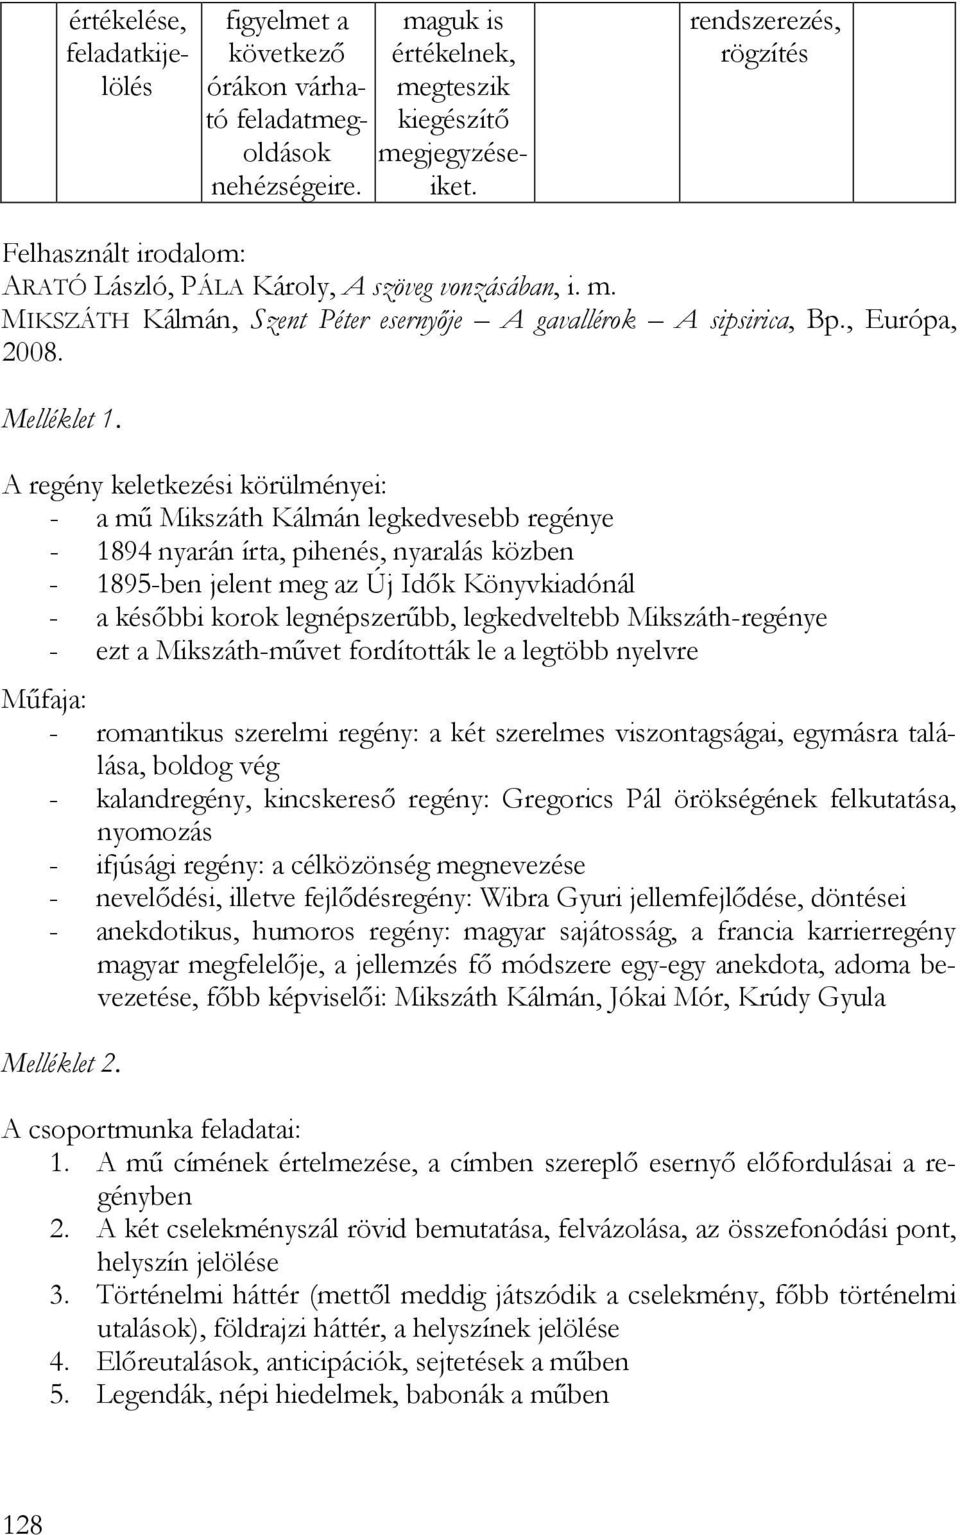 MOLNÁRNÉ VÁMOS KATALIN Tanítási segédlet Mikszáth Kálmán műveinek  tanításához - PDF Ingyenes letöltés